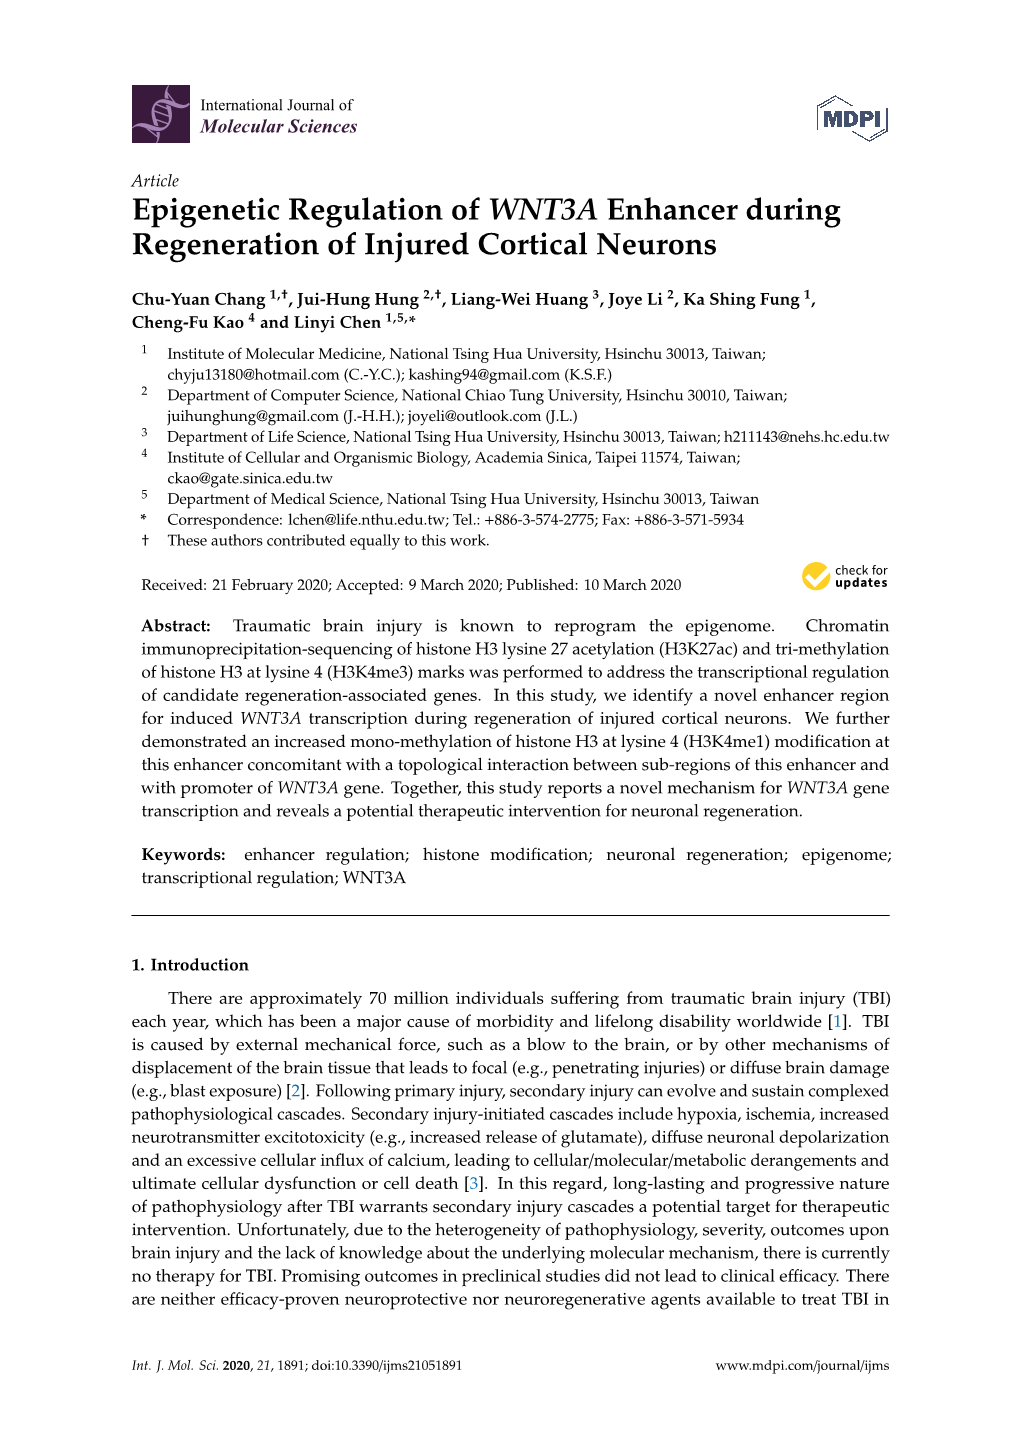 Epigenetic Regulation of WNT3A Enhancer During Regeneration of Injured Cortical Neurons